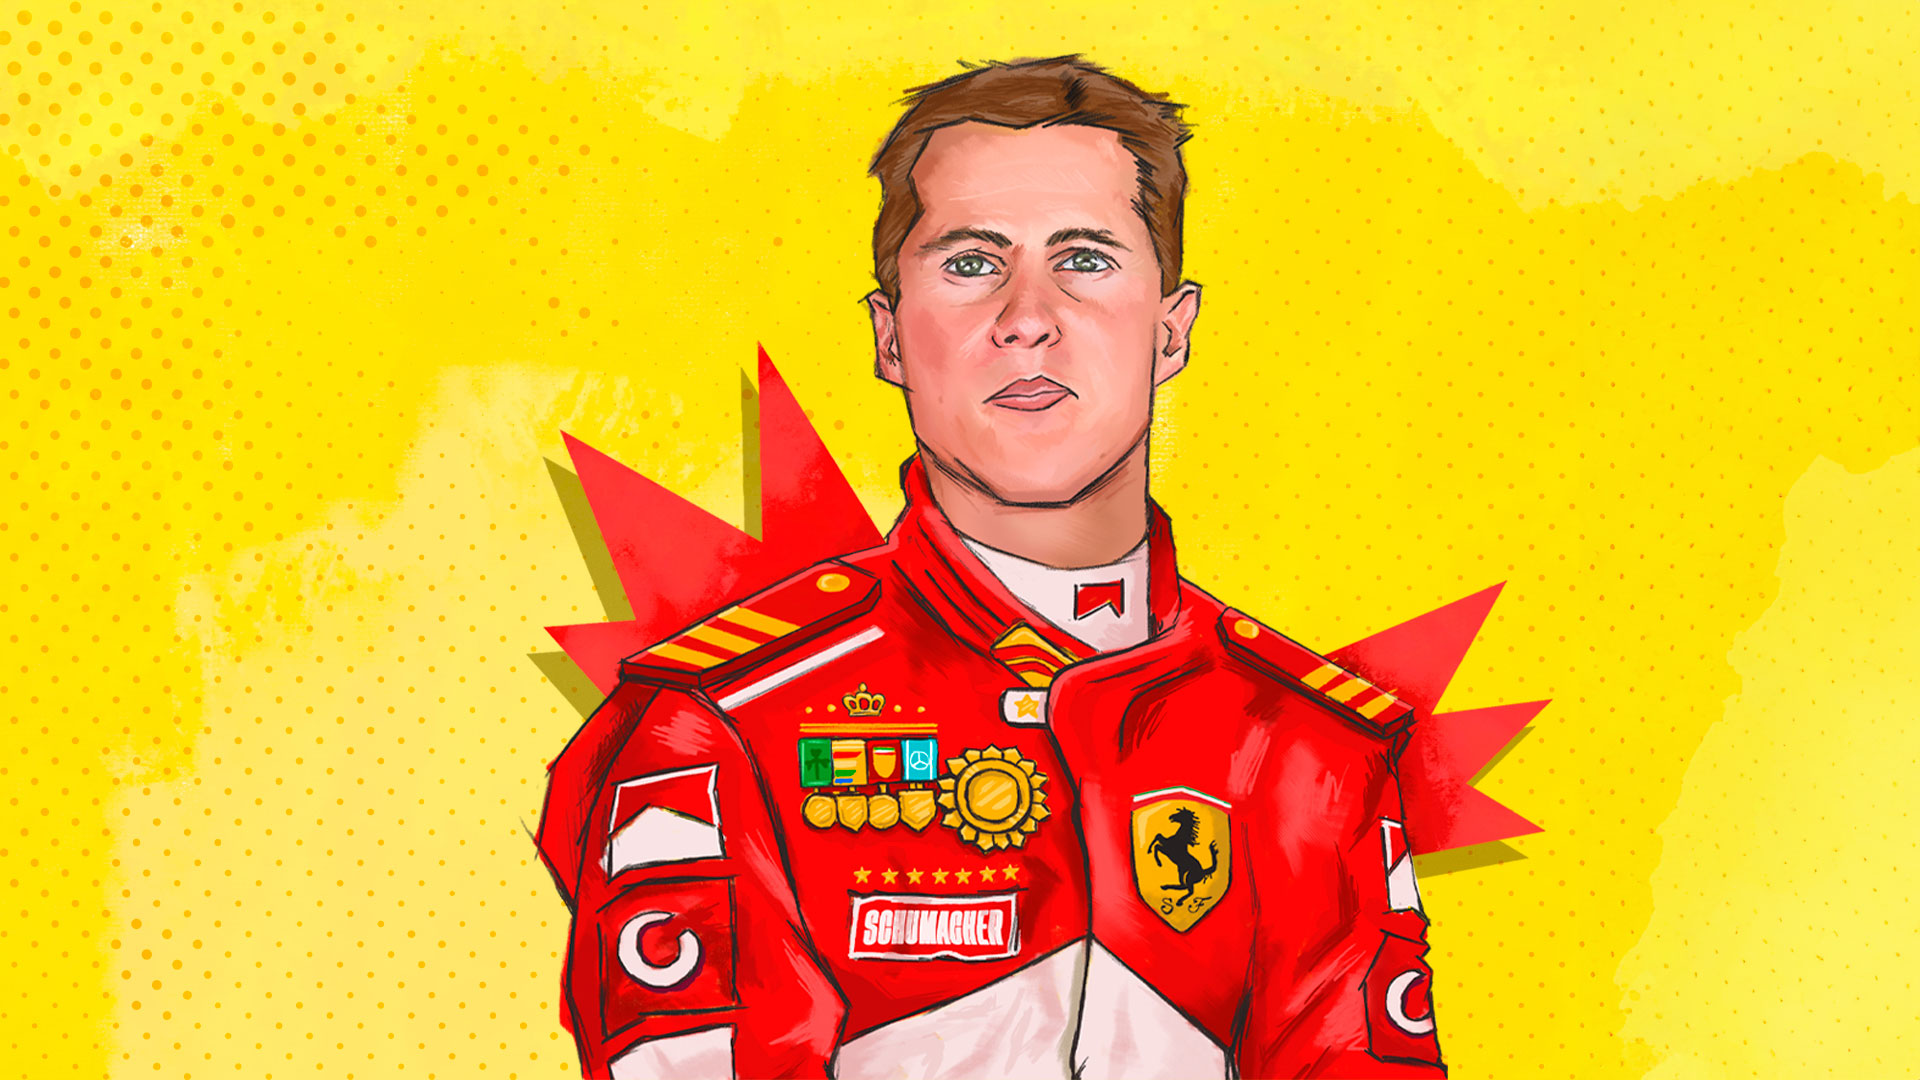 Radiografía: Michael Schumacher, el kaiser de la Formula 1